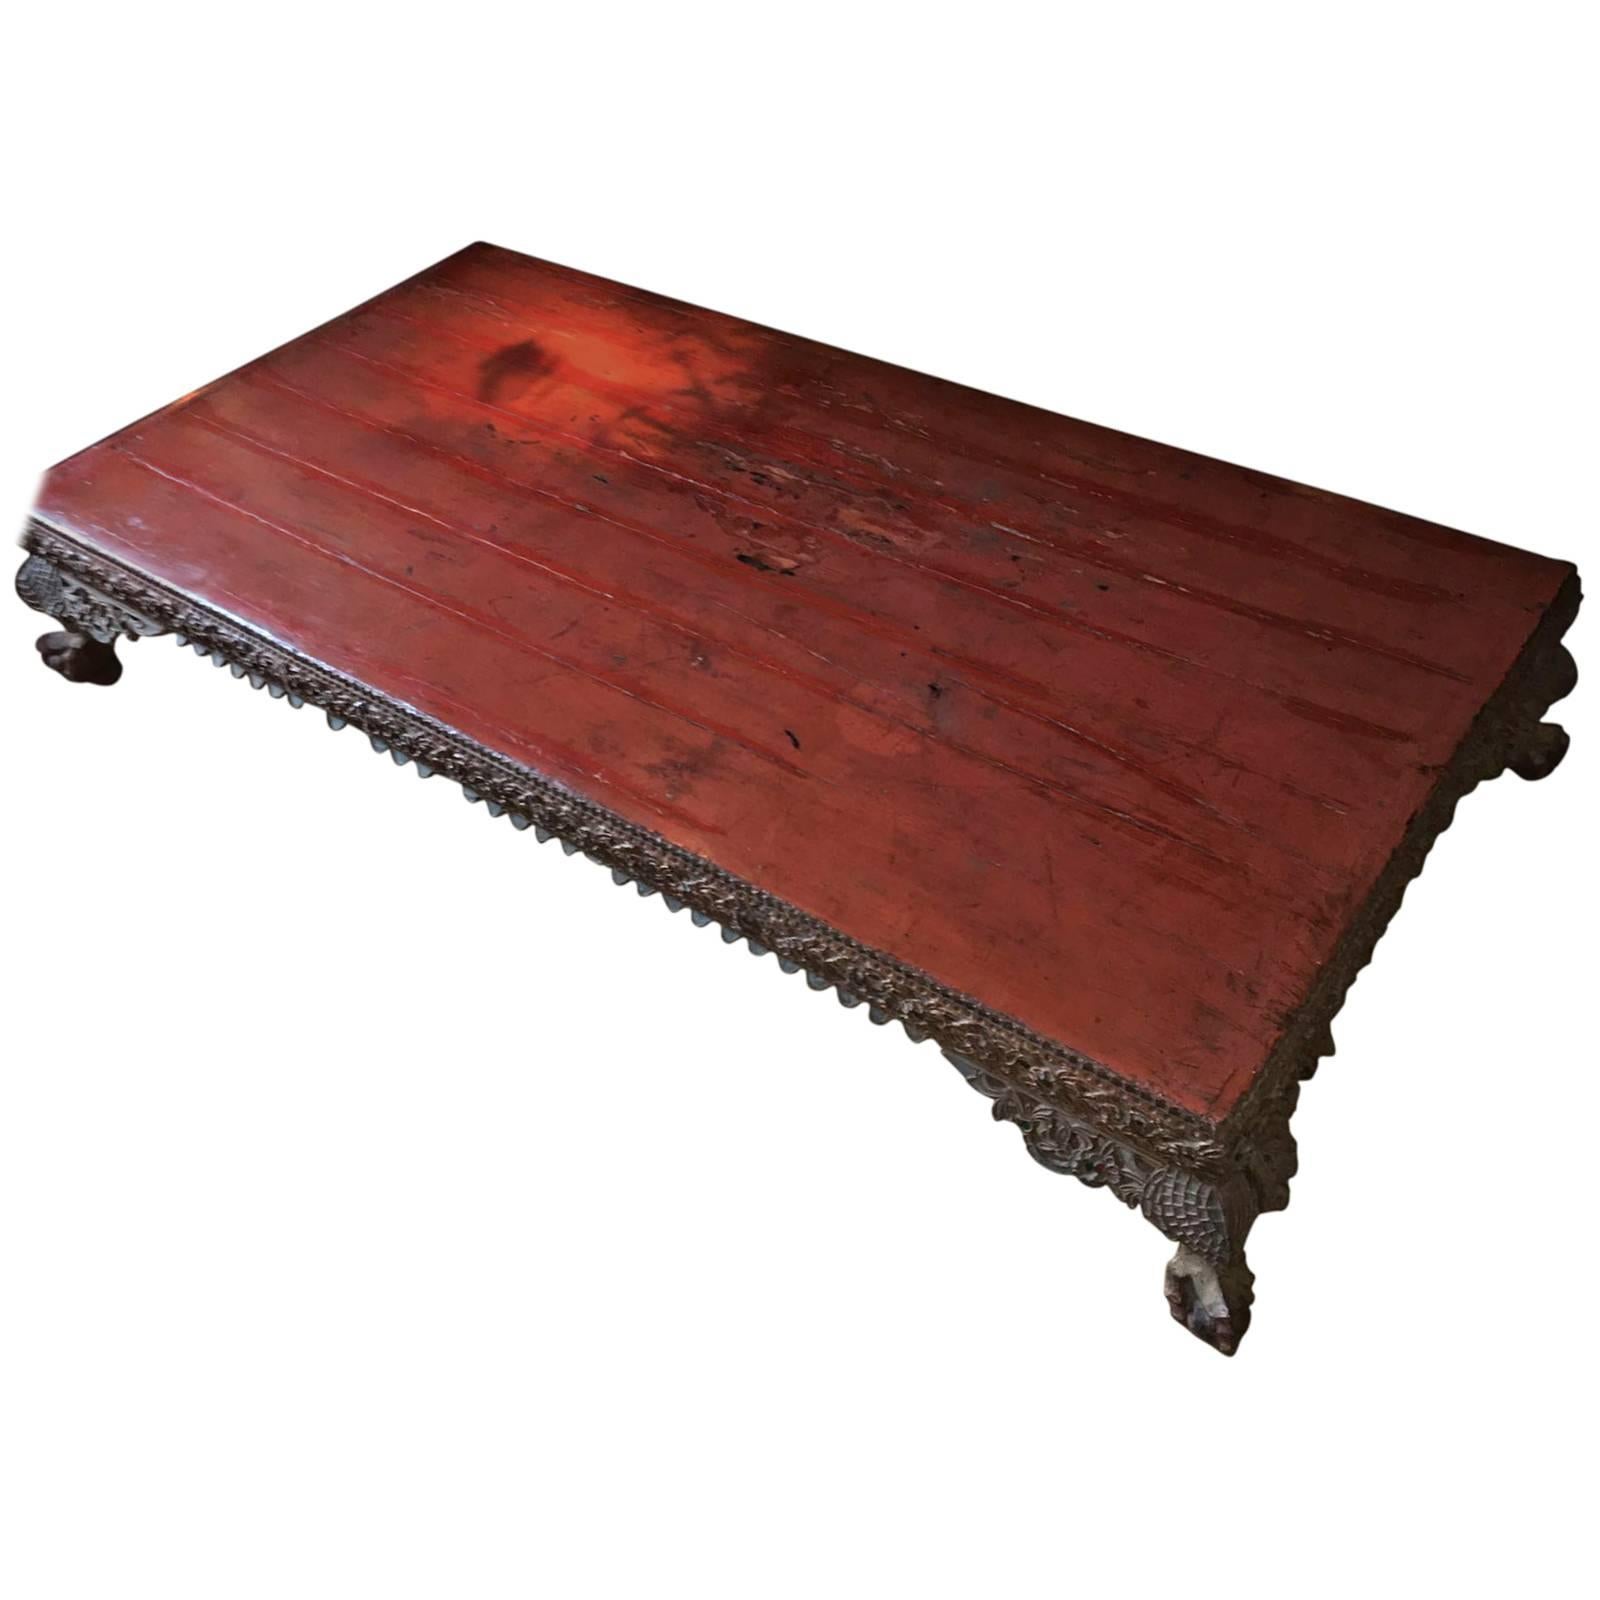 Außergewöhnlicher birmanischer niedriger Tisch in rotem Originallack, Birma, 18
Veredelt mit Glas und vergoldeten Verzierungen,
eignet sich hervorragend als Couchtisch in einer Vintage-Einrichtung oder in einem klassischen Ambiente.

 